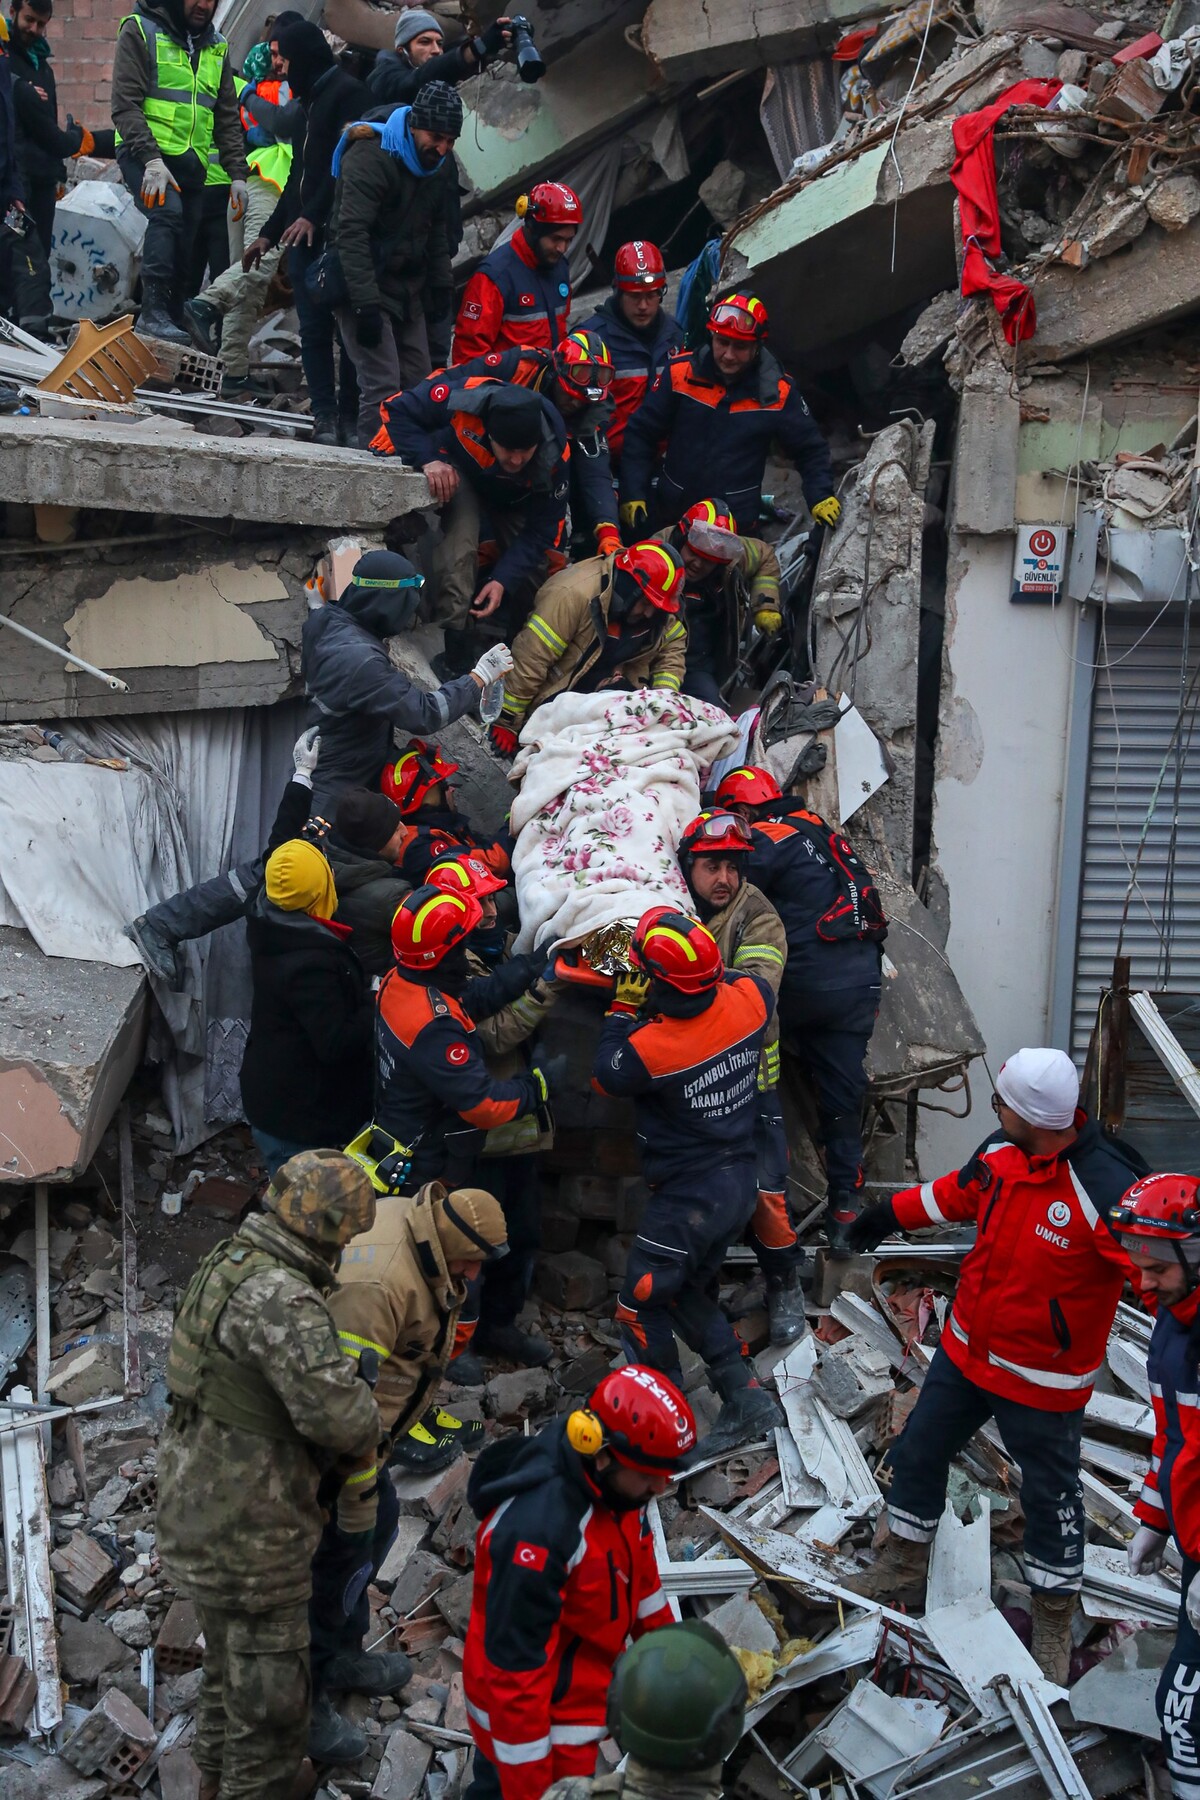 turecko, zemetrasenie